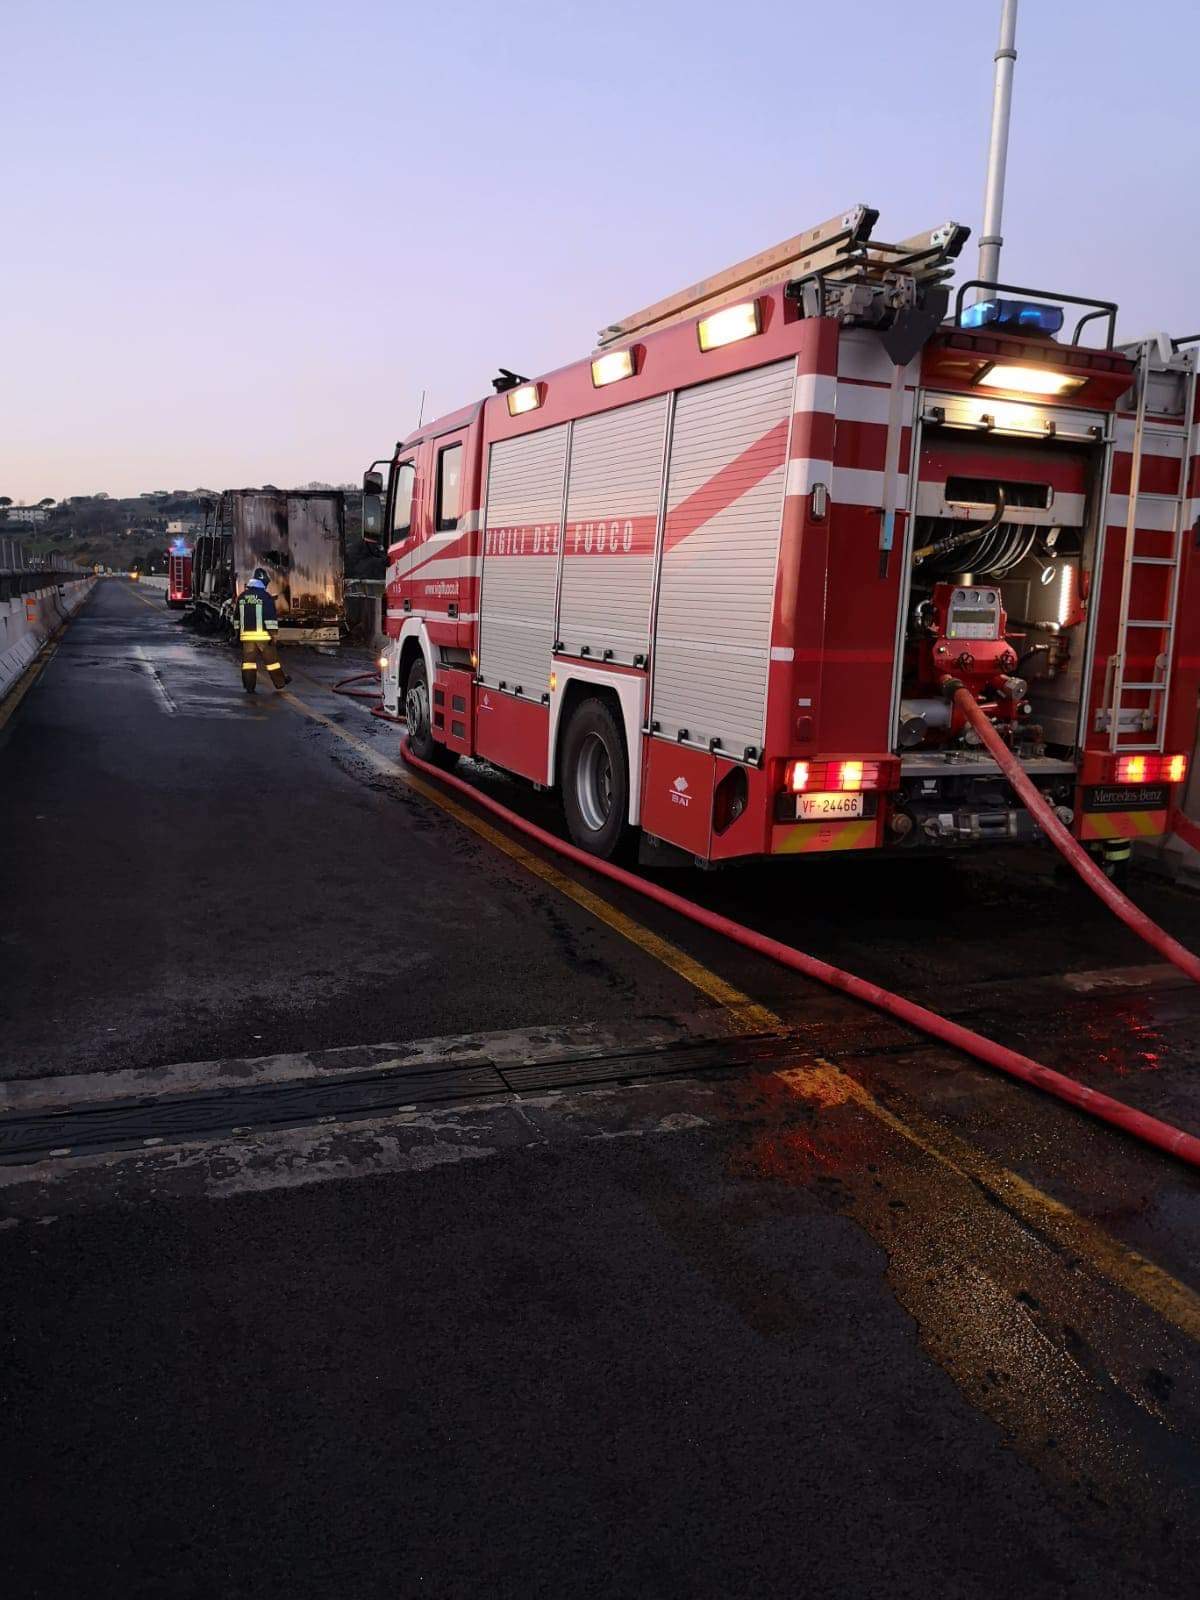 A14, veicolo in fiamme: le immagini dei vigili del fuoco FOTO VIDEO